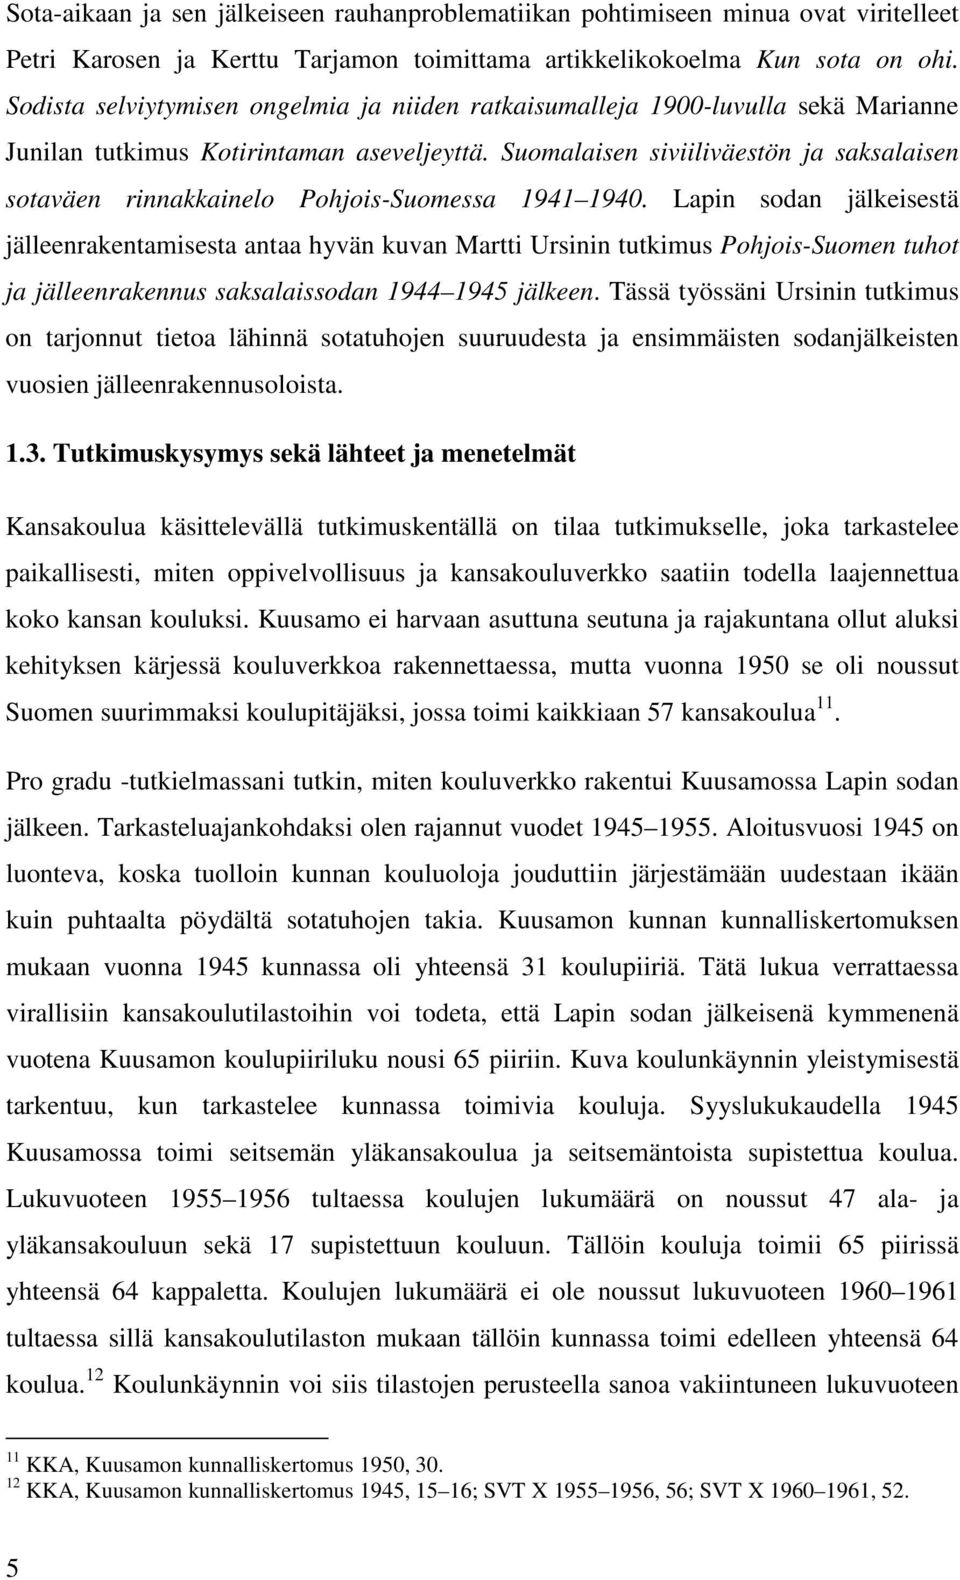 Suomalaisen siviiliväestön ja saksalaisen sotaväen rinnakkainelo Pohjois-Suomessa 1941 1940.